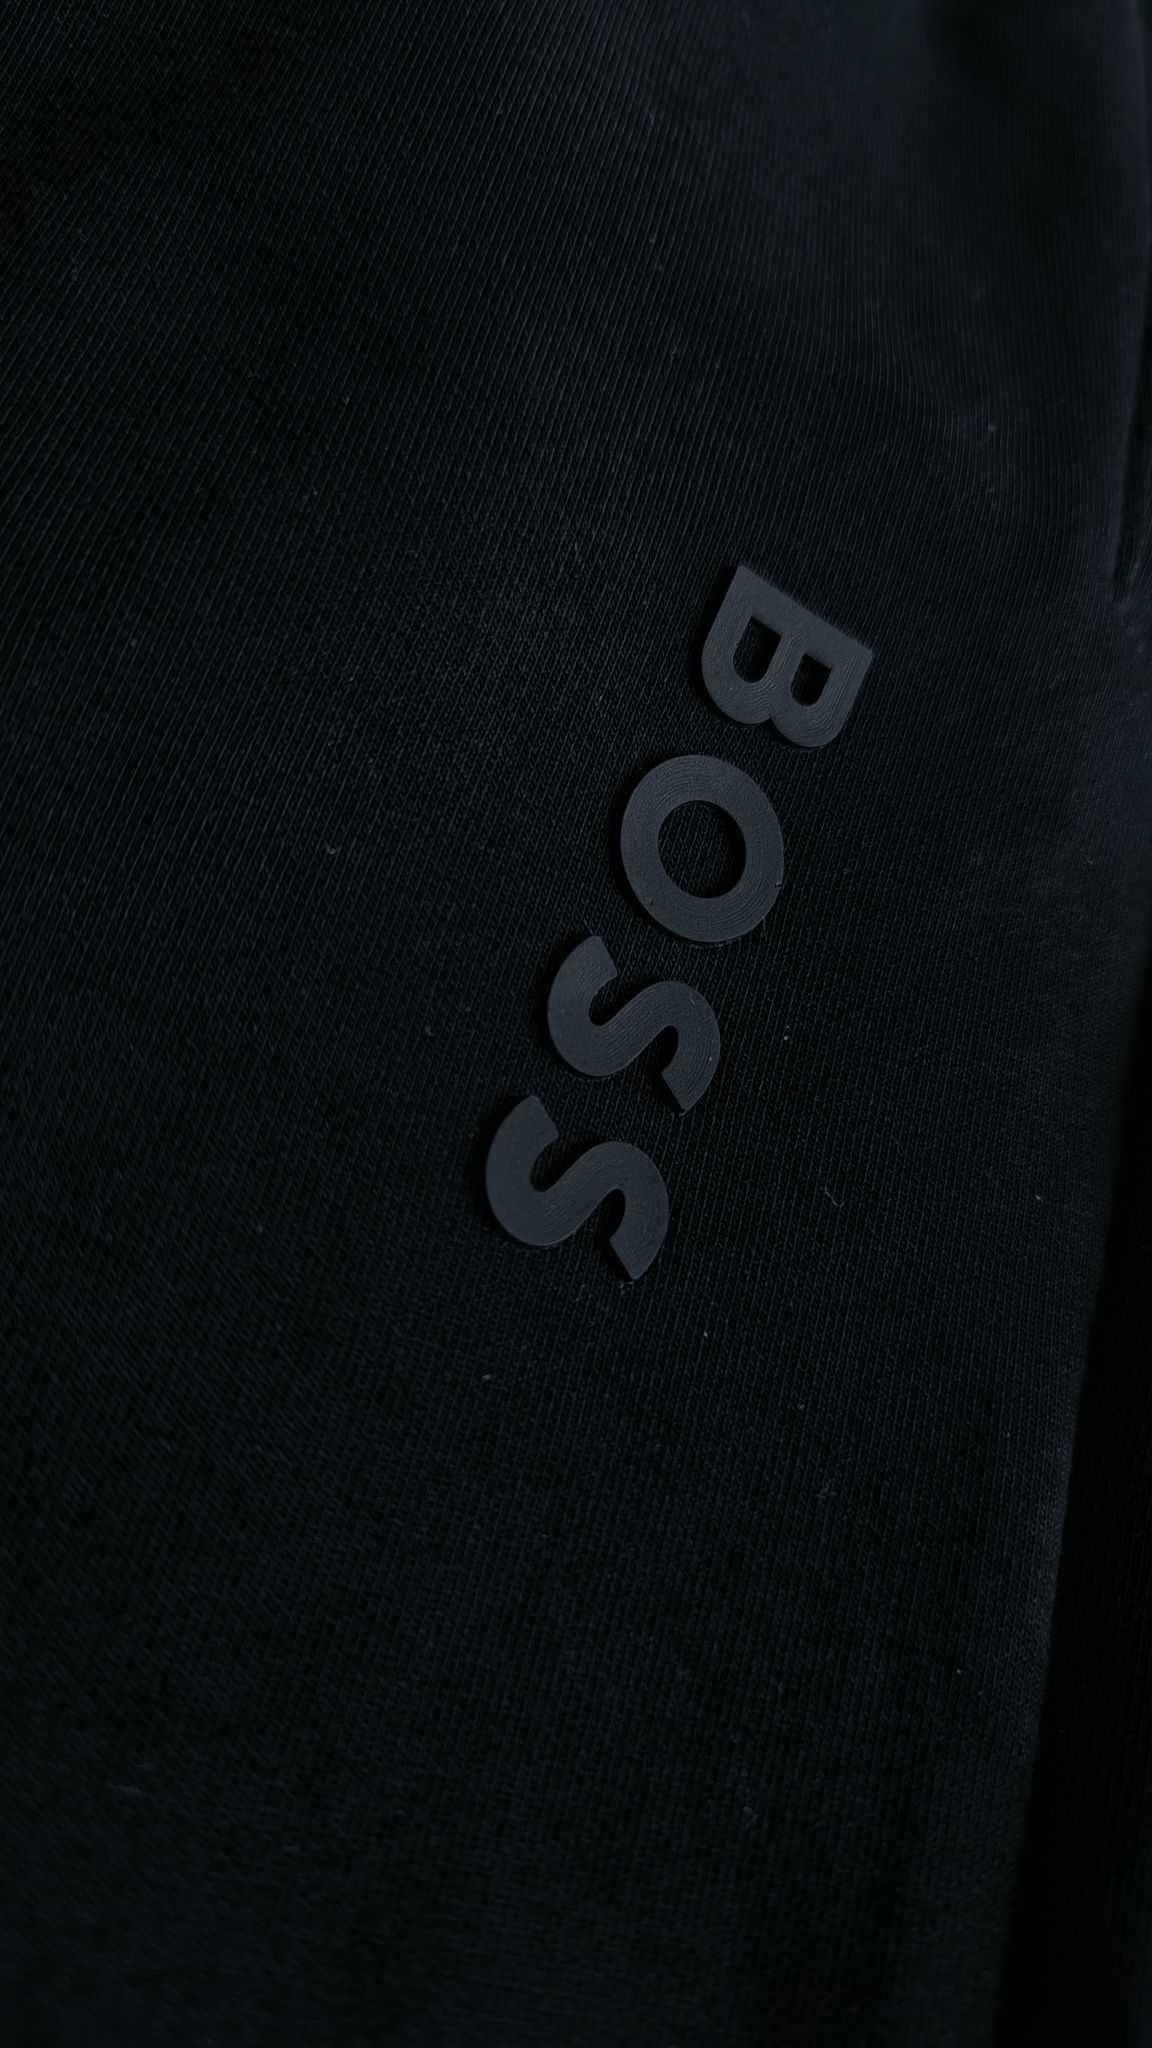 Spodnie dresowe męskie Hugo Boss czarne nowe L , XL , XXL, XXXL